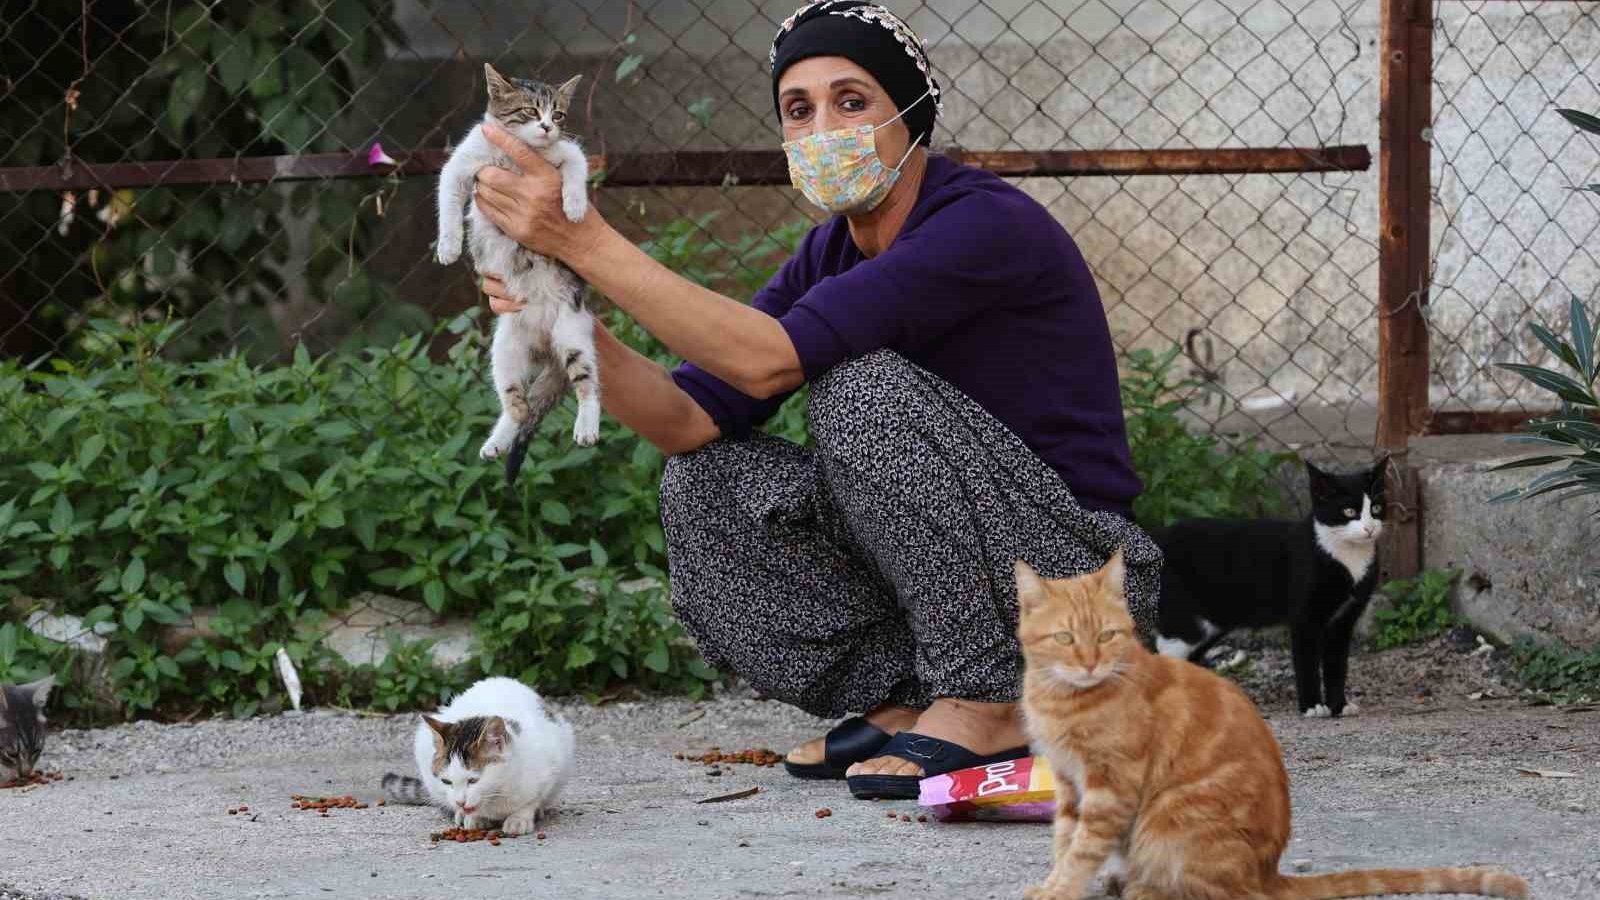 Kanser hastası kadın hayata hayvanlarla tutunuyor